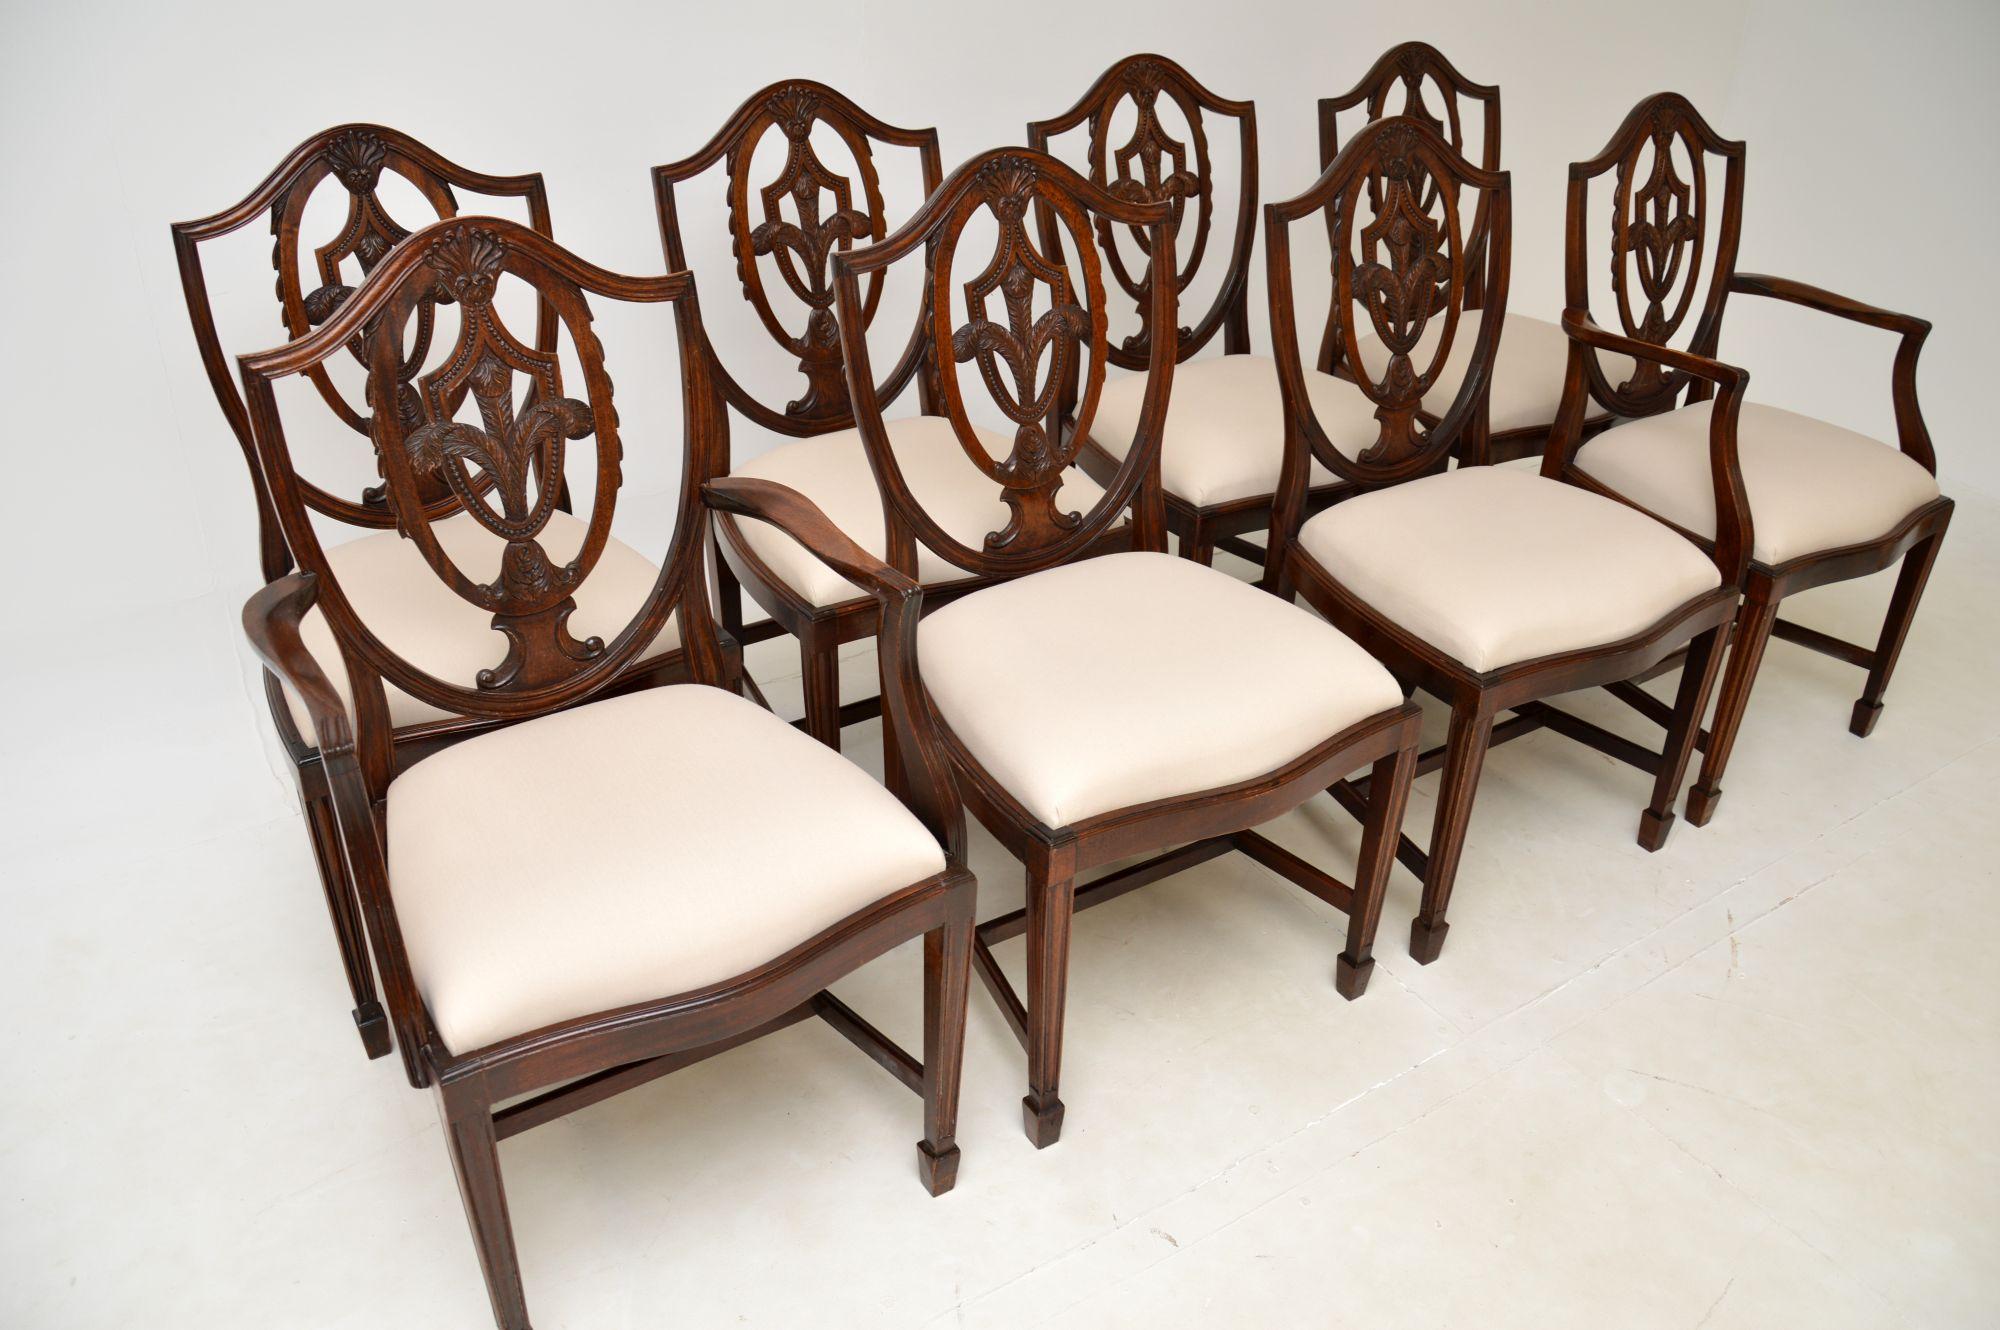 Un bel ensemble de huit chaises de salle à manger antiques à dossier bouclier dans le style Sheraton. Ils ont été fabriqués en Angleterre et datent des années 1930.

La qualité est superbe, les dossiers sont magnifiquement sculptés et percés de